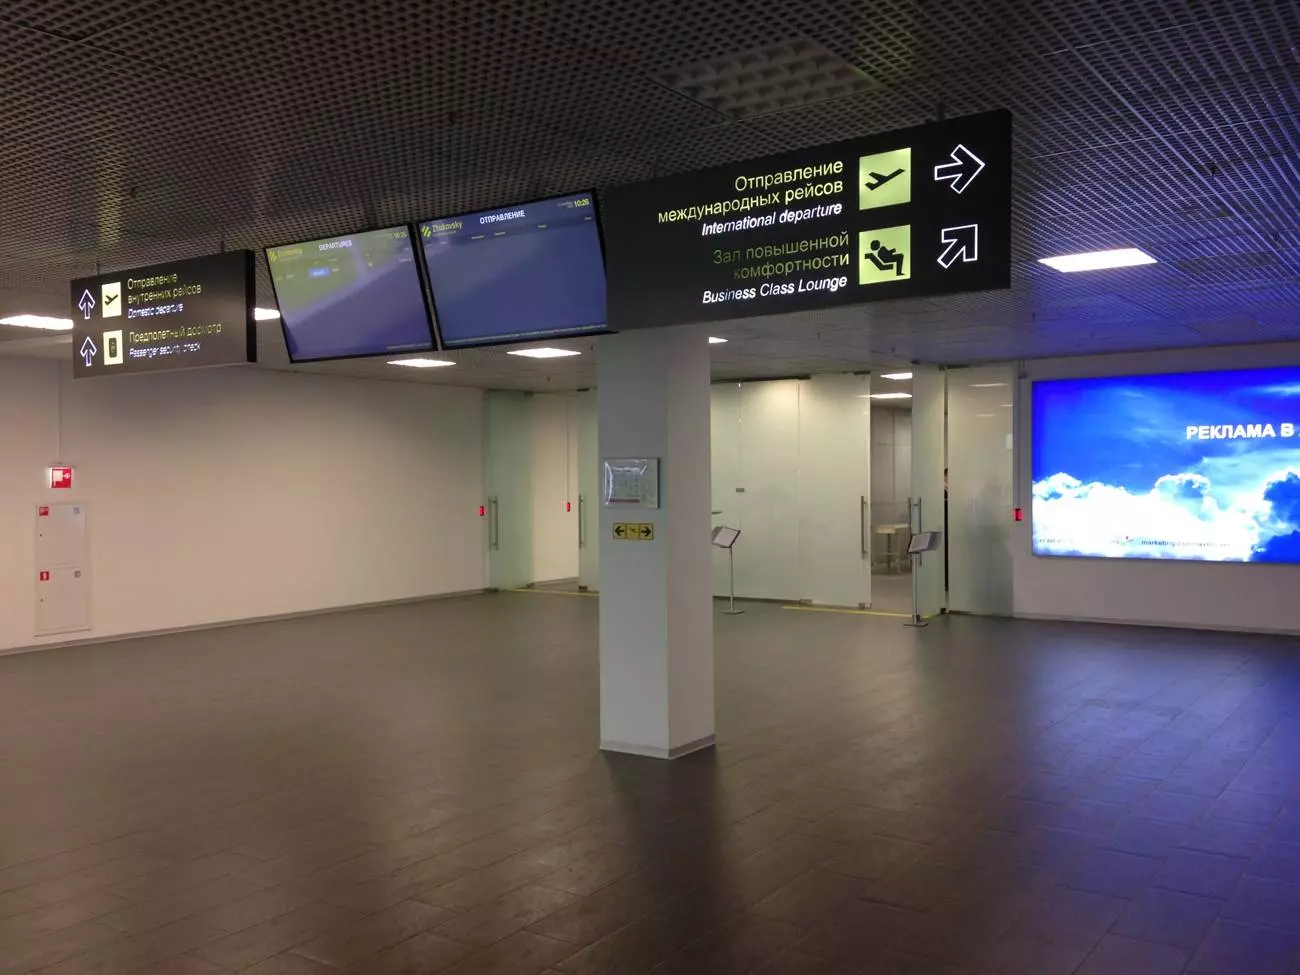 Как добраться до аэропорта жуковский из москвы (zia): на общественном транспорте, метро, электричке, есть ли аэроэкспресс, на машине